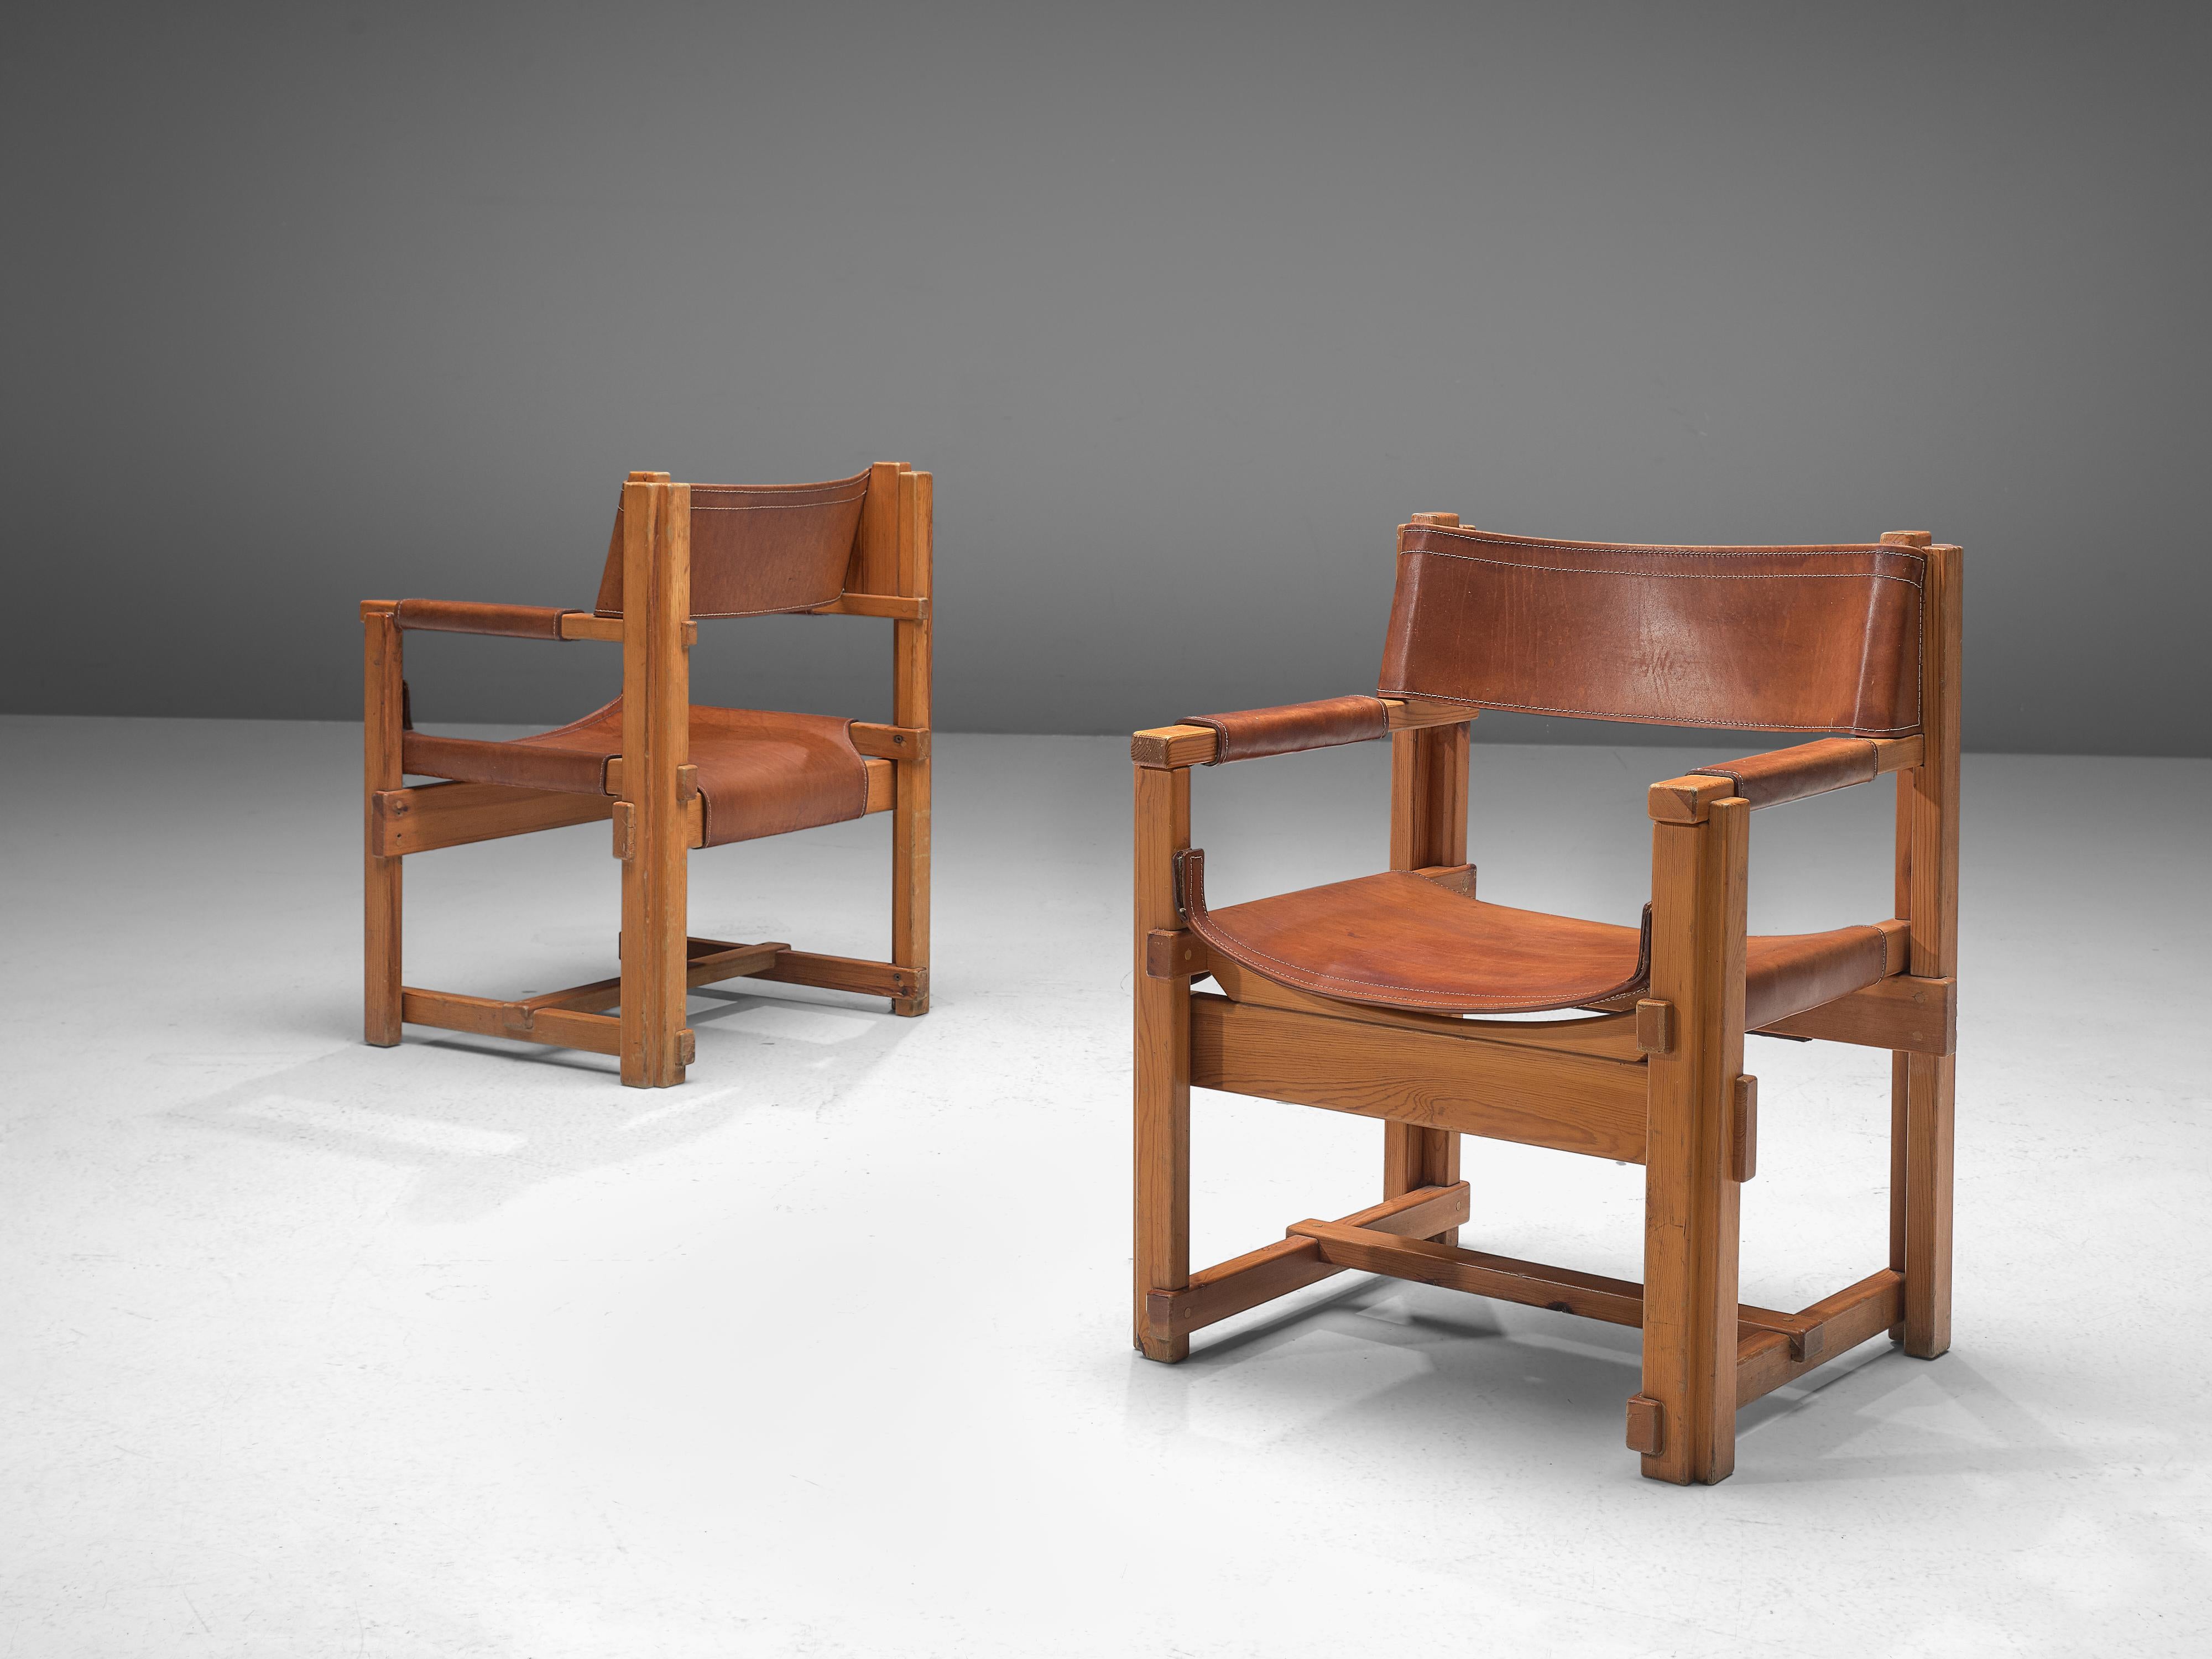 Joan Pou, fauteuils, pin, cuir, Espagne, années 1960

Cet ensemble de fauteuils en provenance d'Espagne est strict, puriste et appartient au mouvement rationaliste espagnol. Les chaises présentent un cadre architectural, constitué uniquement de